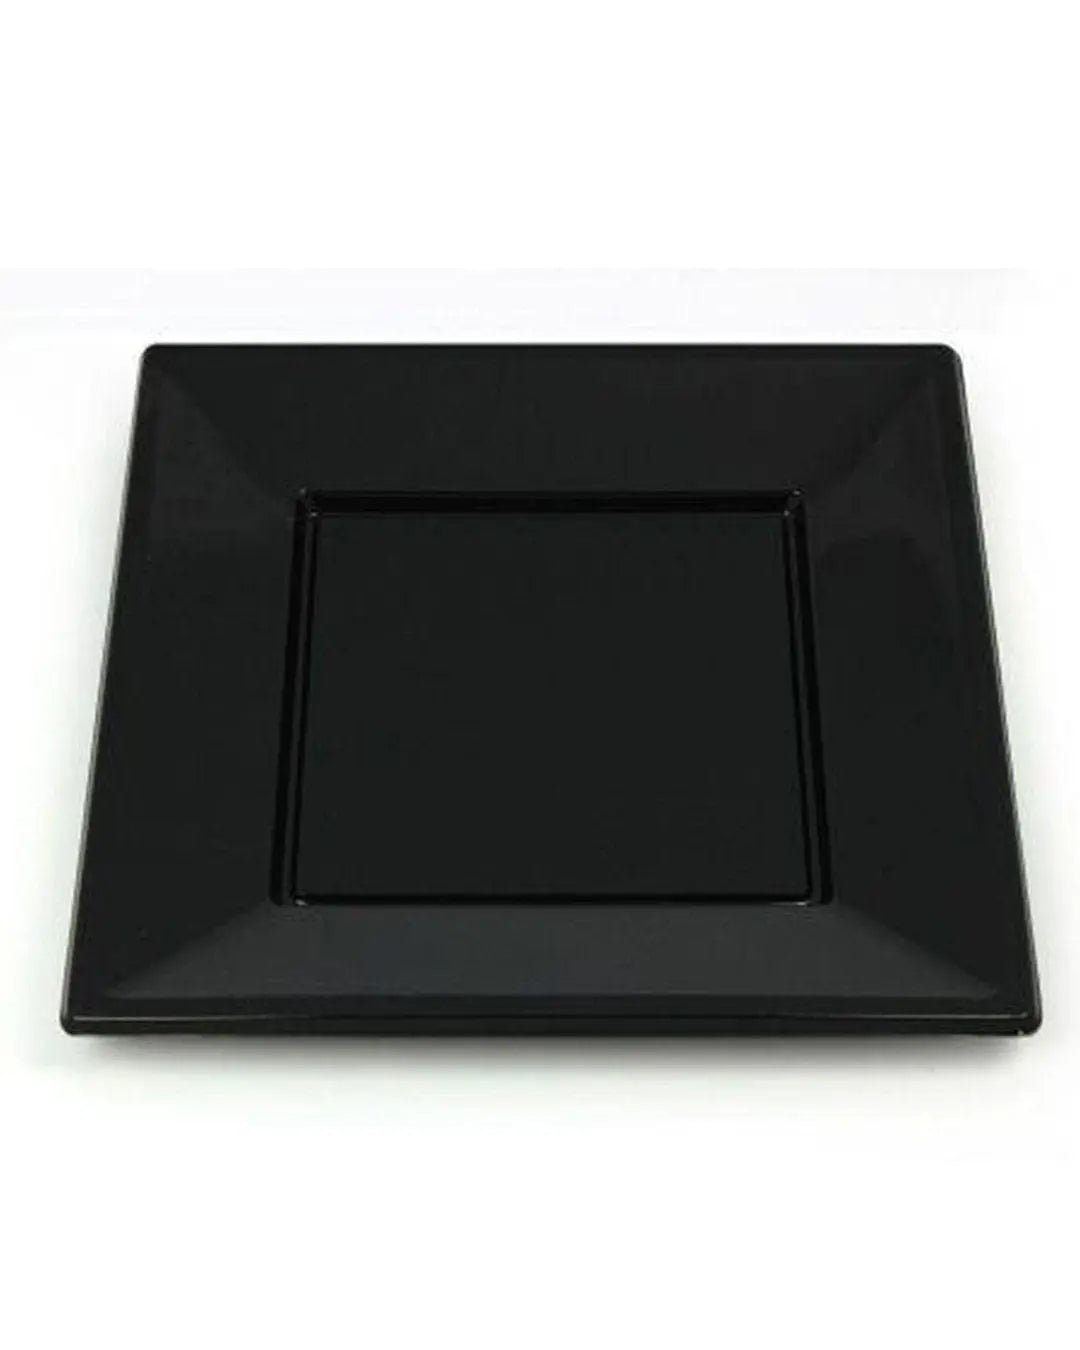 Square Black Plastic Plates 23cm Pack Size 8 Partyware 5033298005711